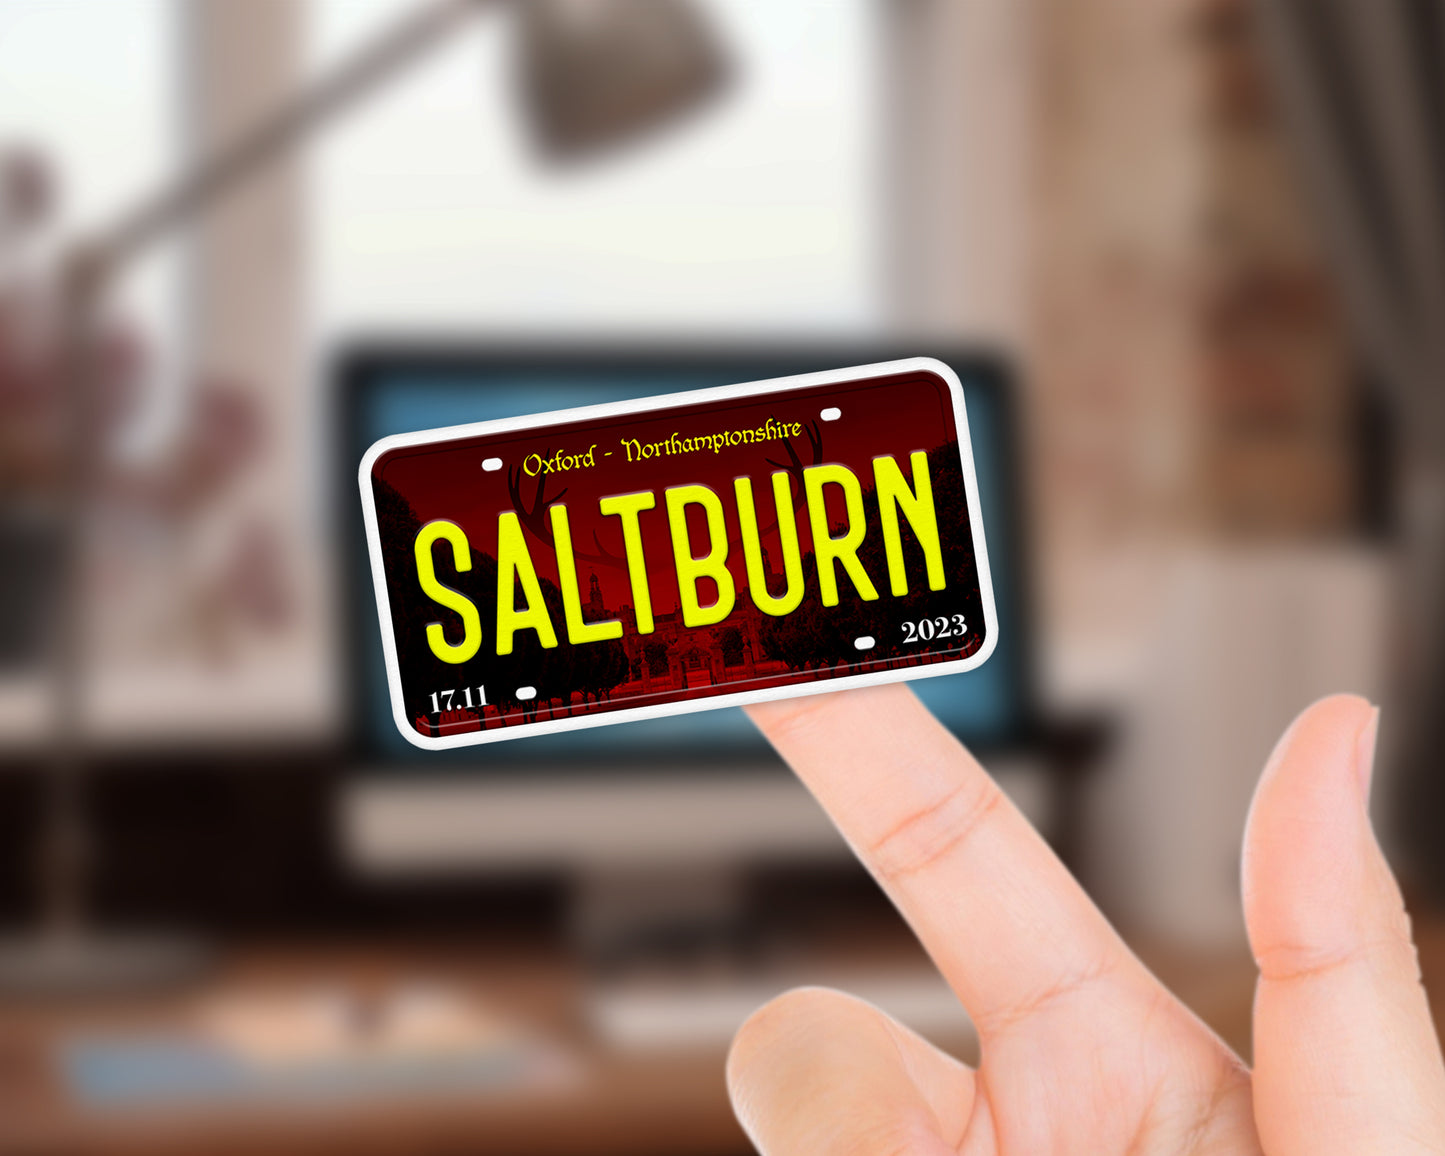 Saltburn (2023) movie sticker